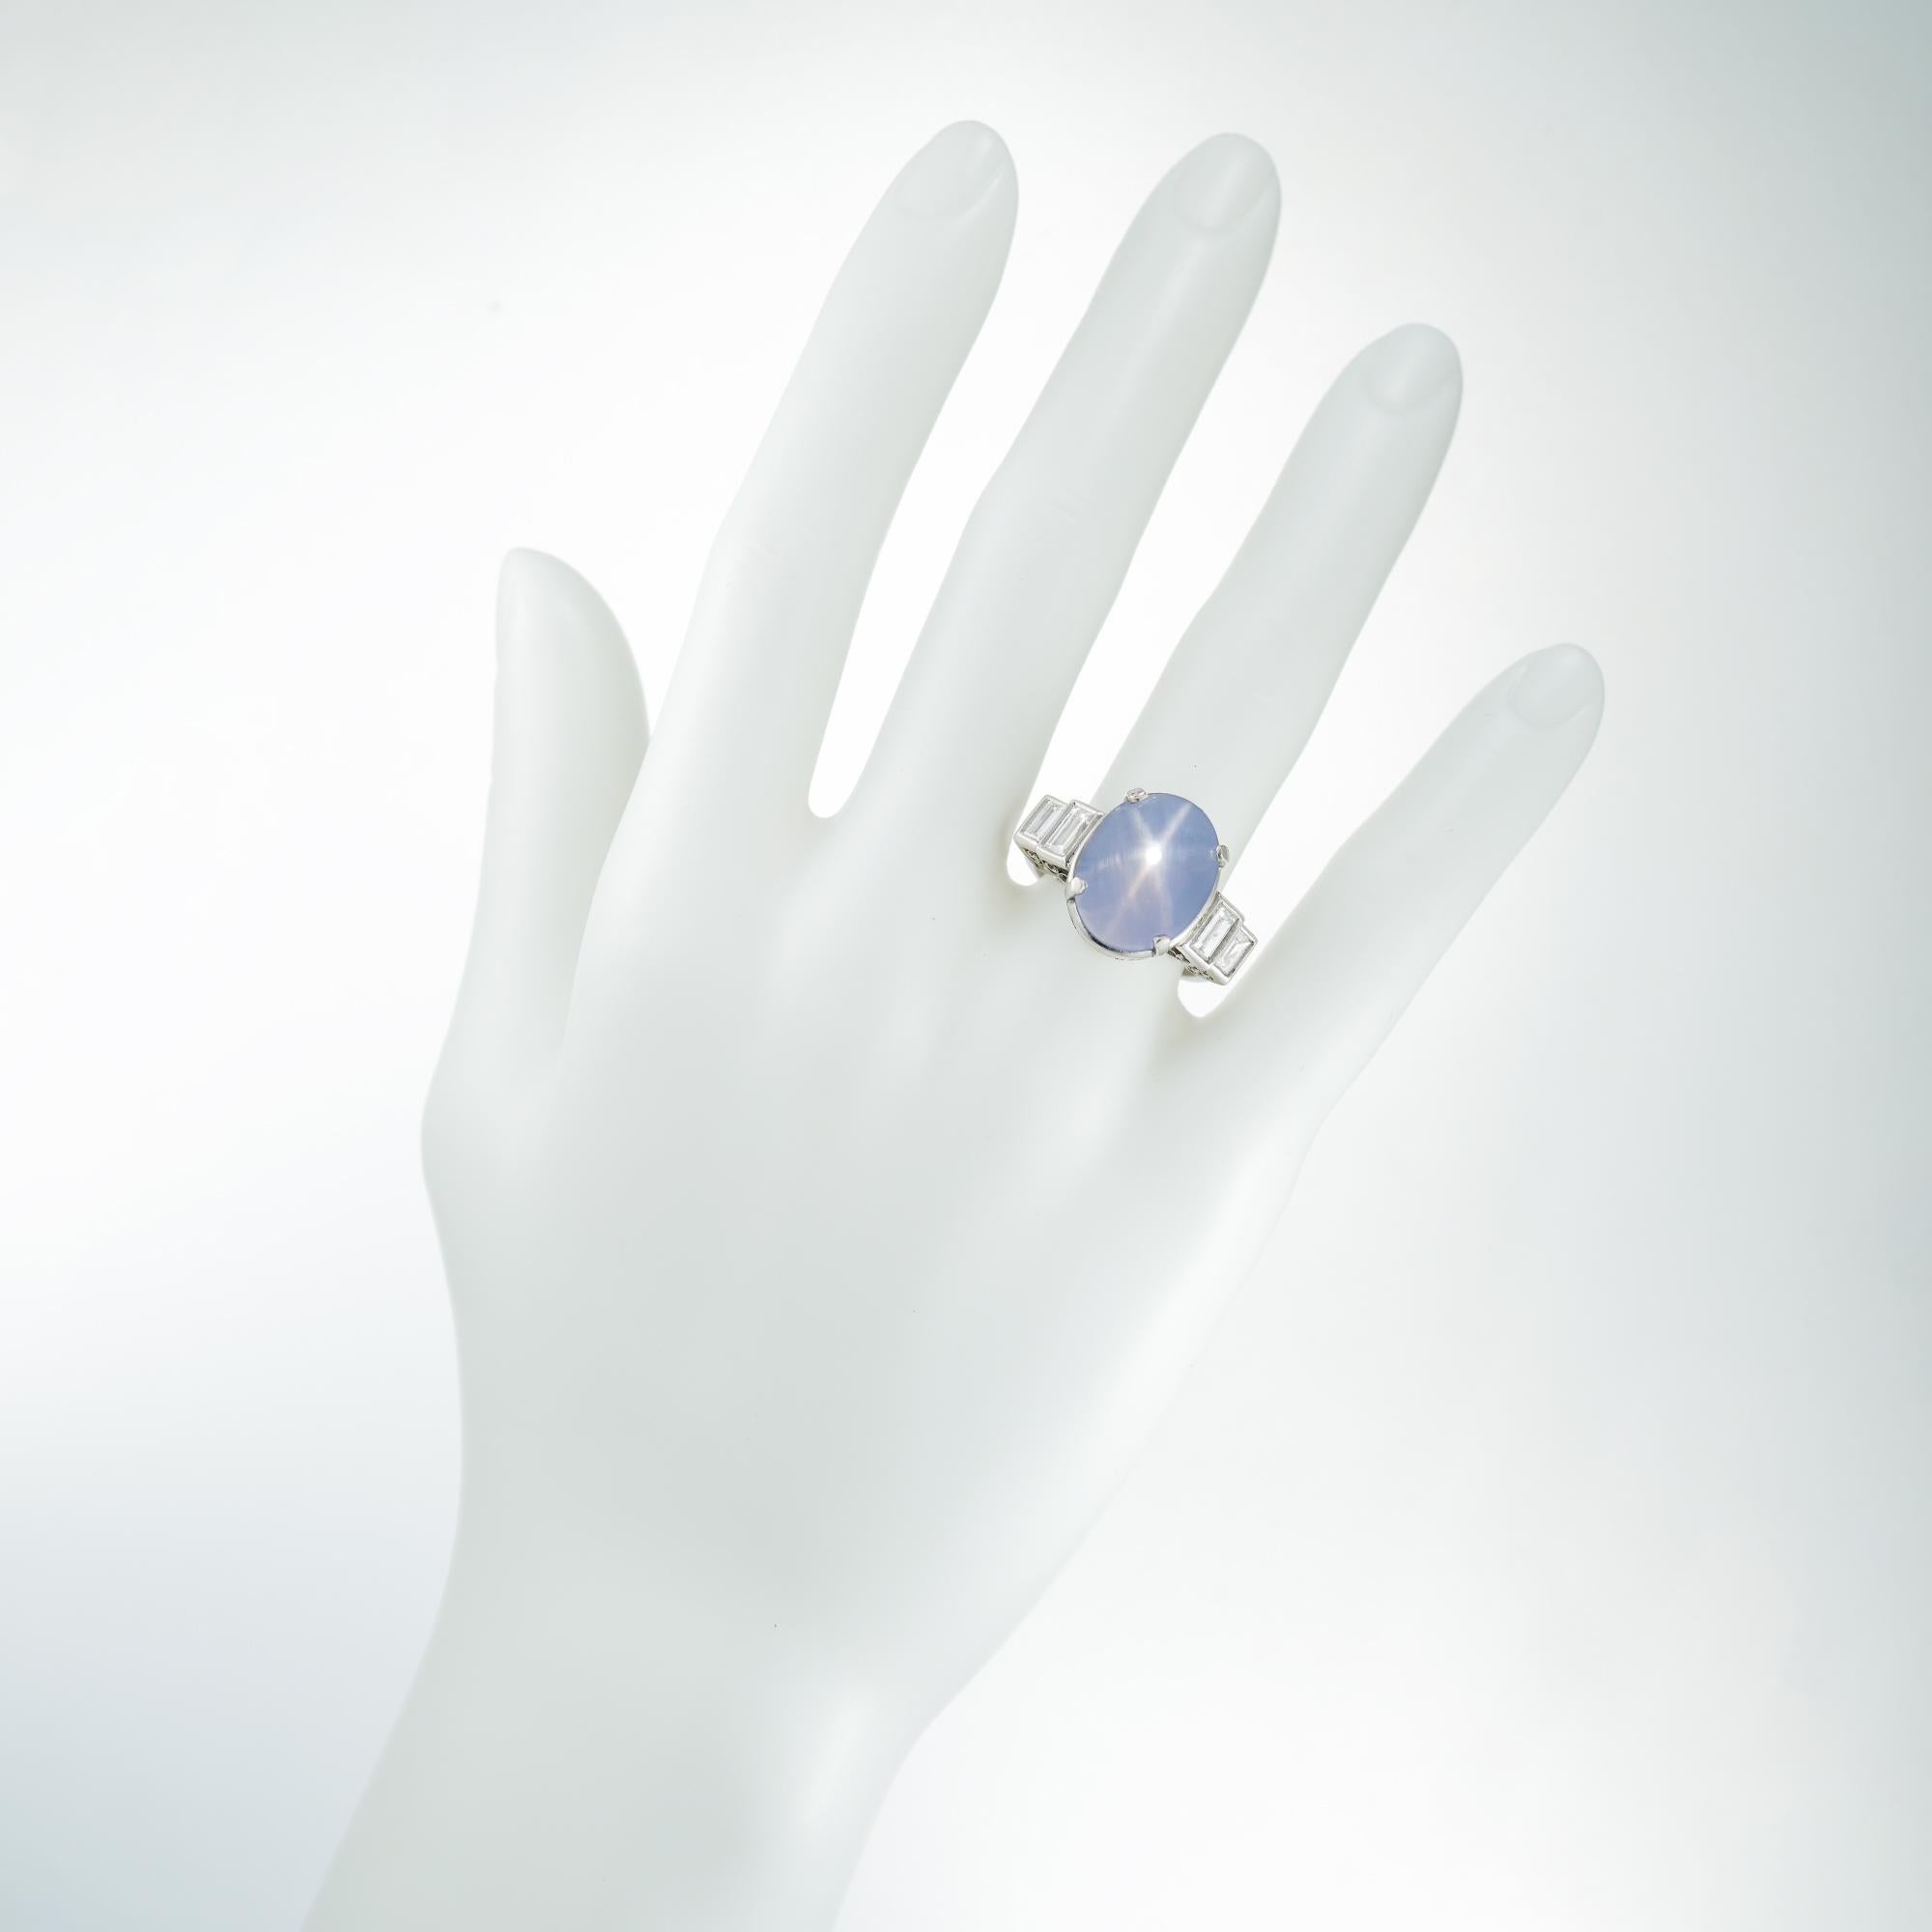 Baguette Cut 17.70 Carat Pale Blue Star Sapphire Diamond Platinum Cocktail Ring